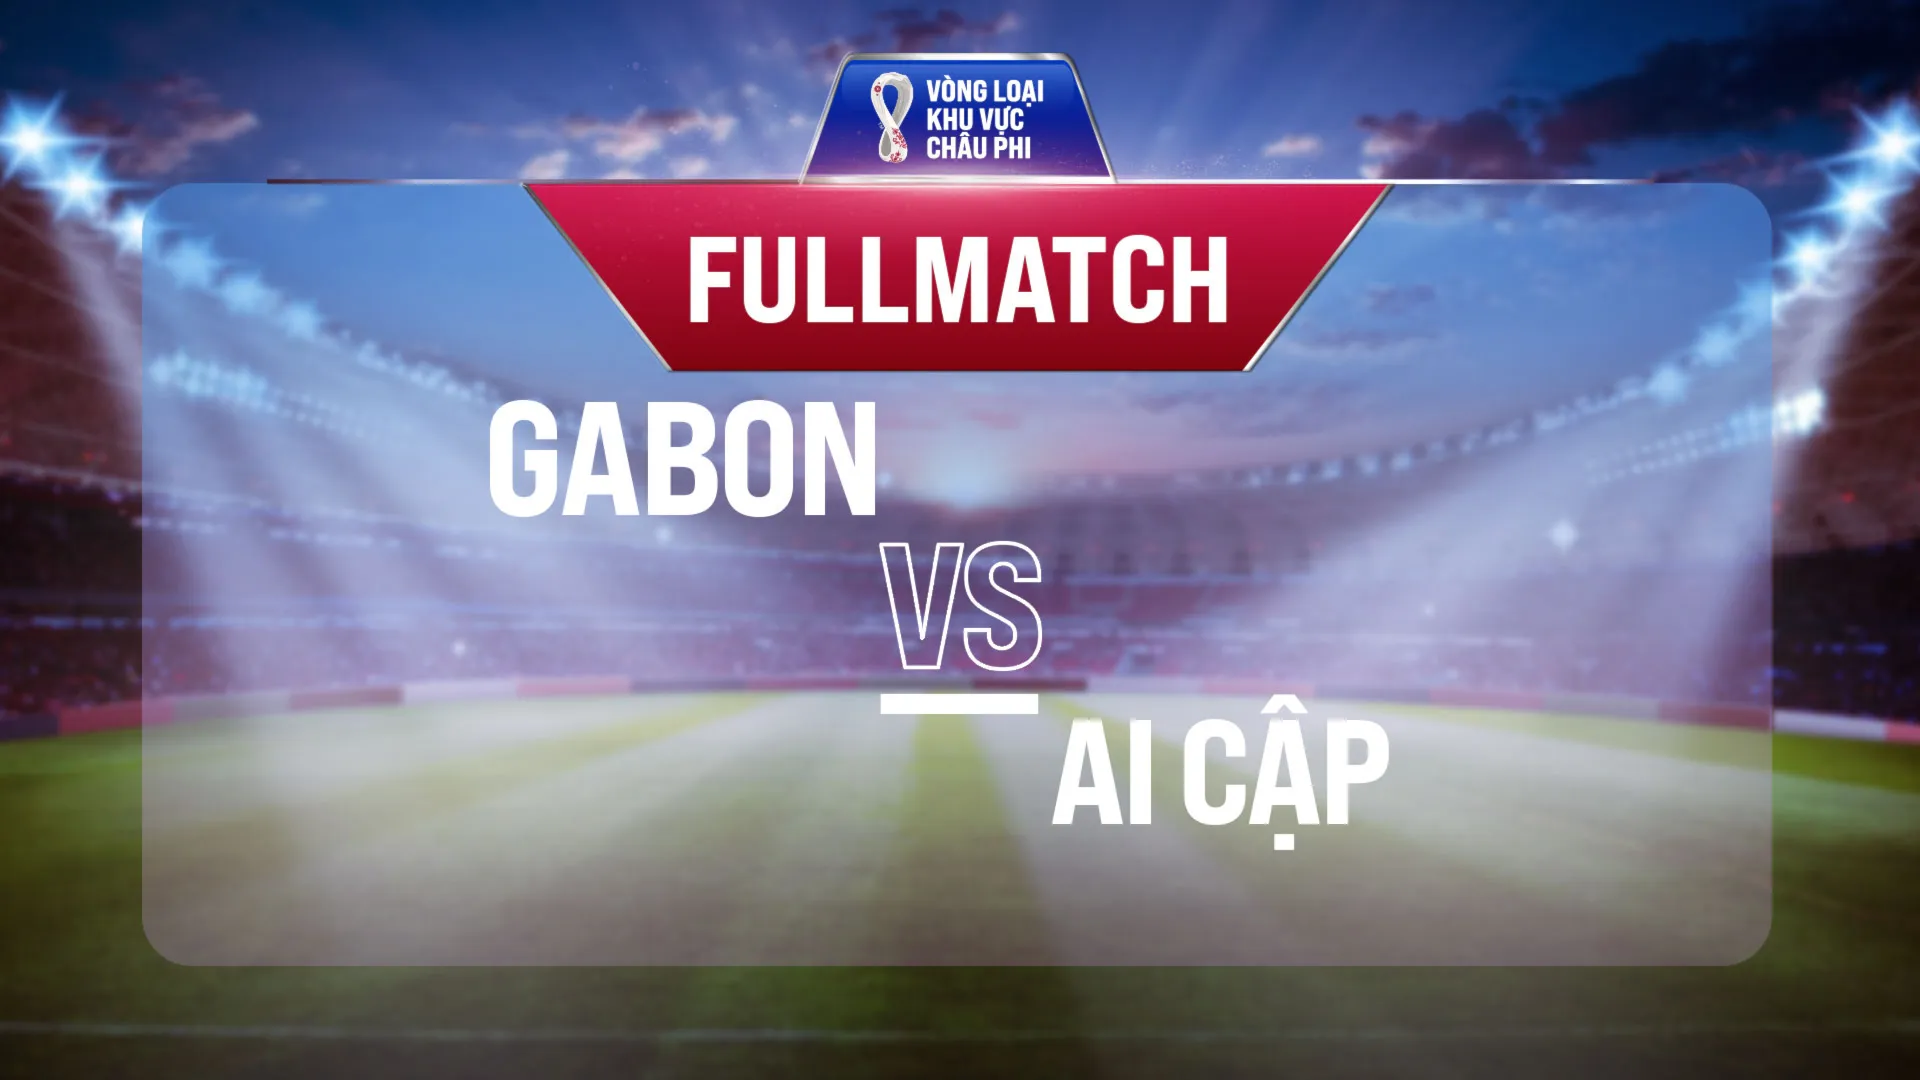 Full match Gabon - Ai Cập (Vòng Loại World Cup 2022 - Khu vực châu Phi)